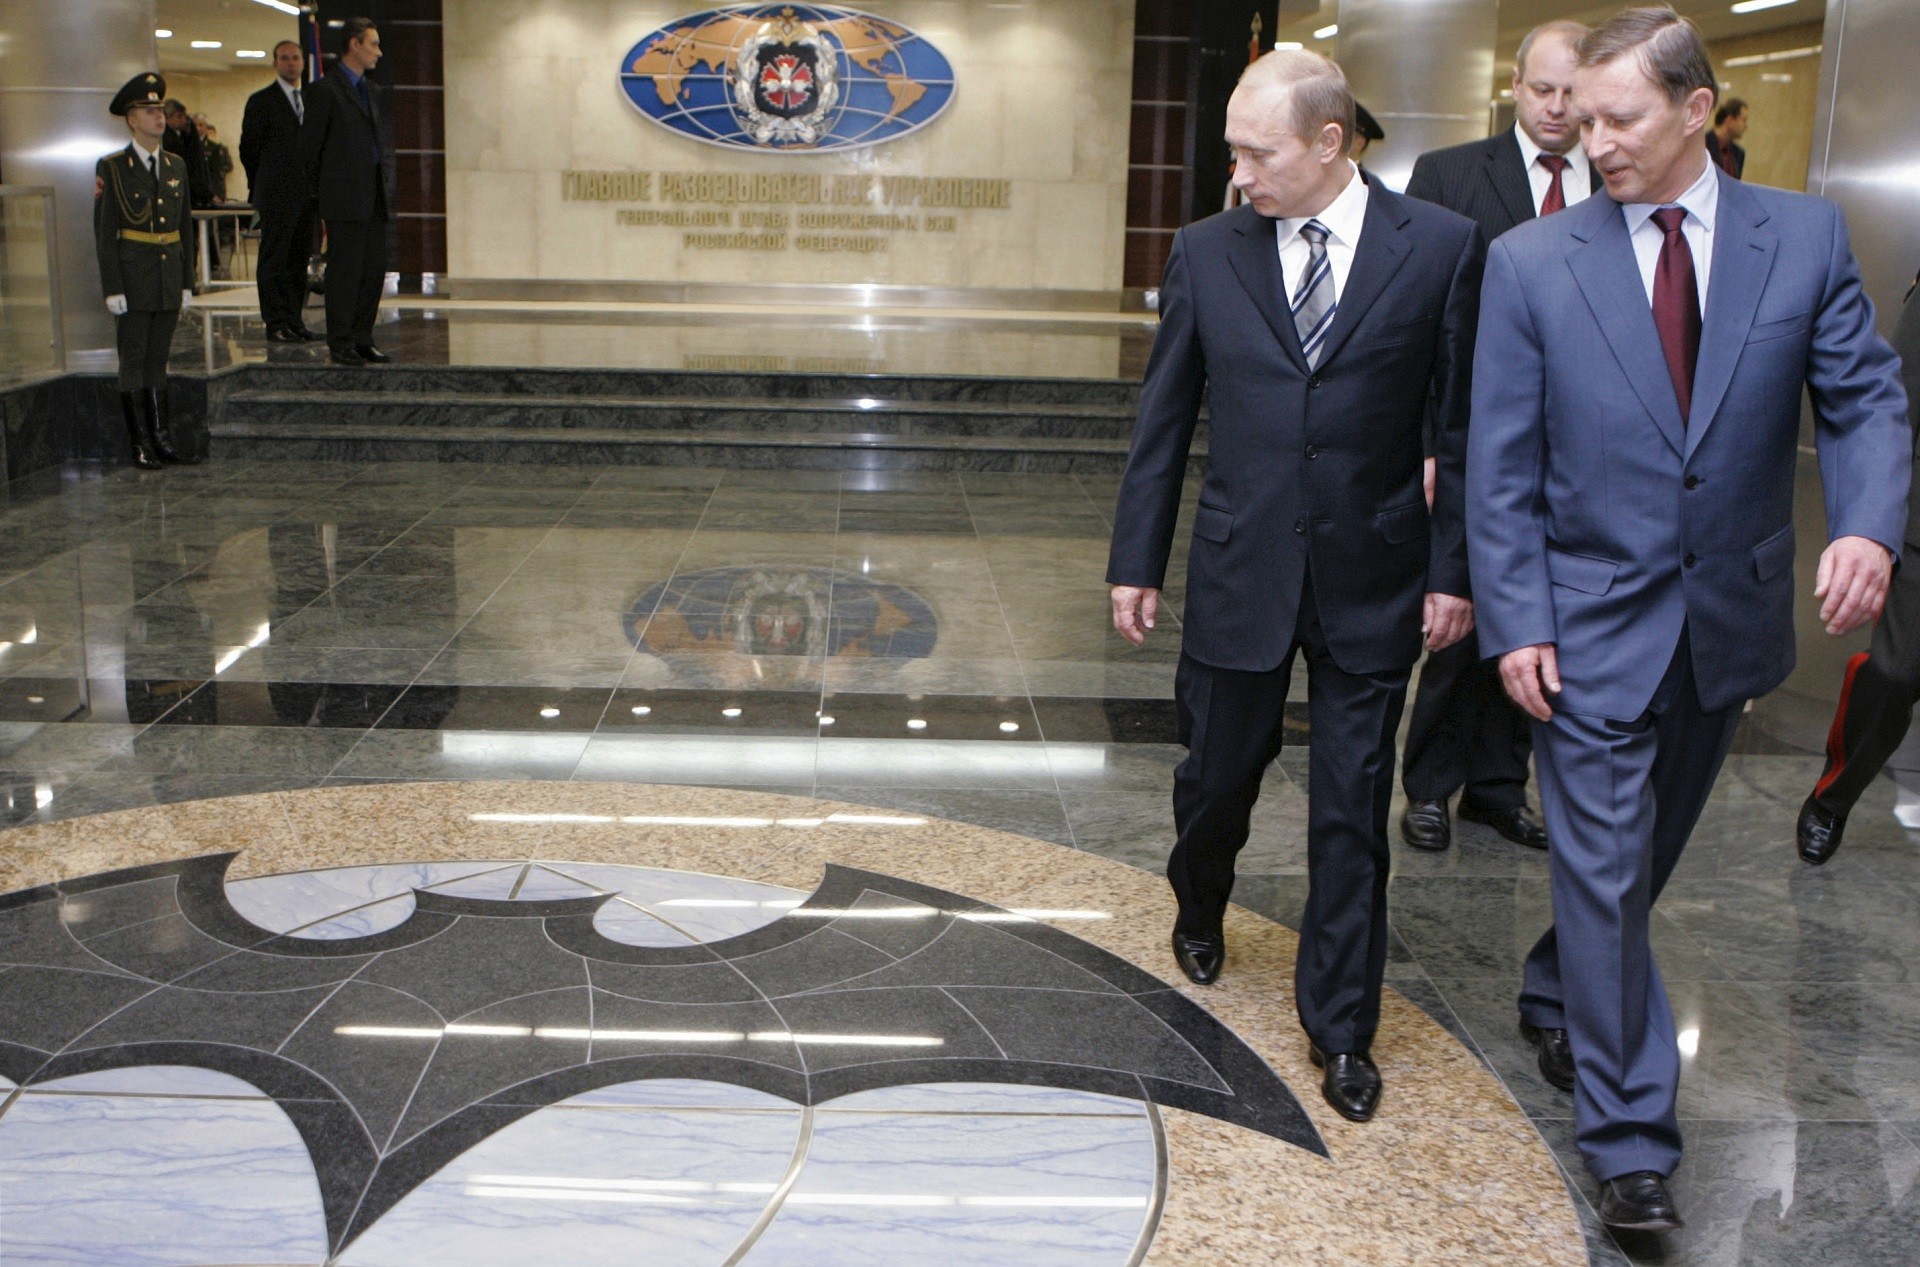 Presidente Putin (esq.) e o então ministro da Defesa,  Serguêi Ivanov (dir.) visitam QG da GRU em Moscou em 2006.